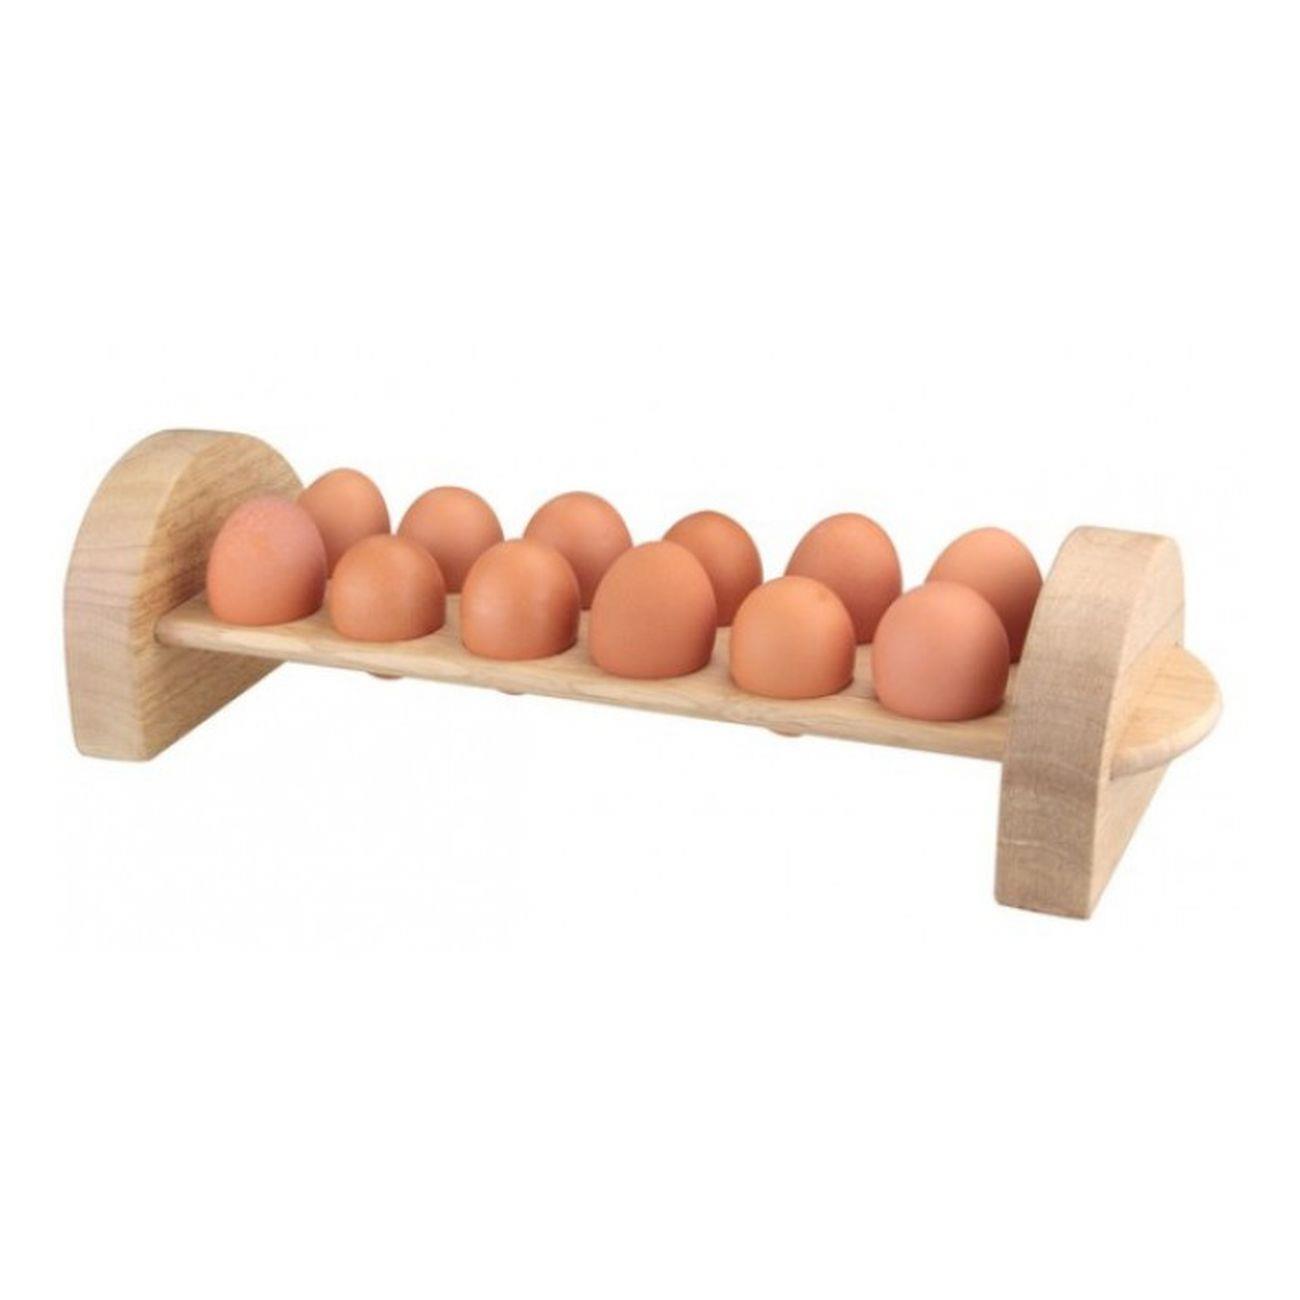 Wooden Rack 12 Eggs